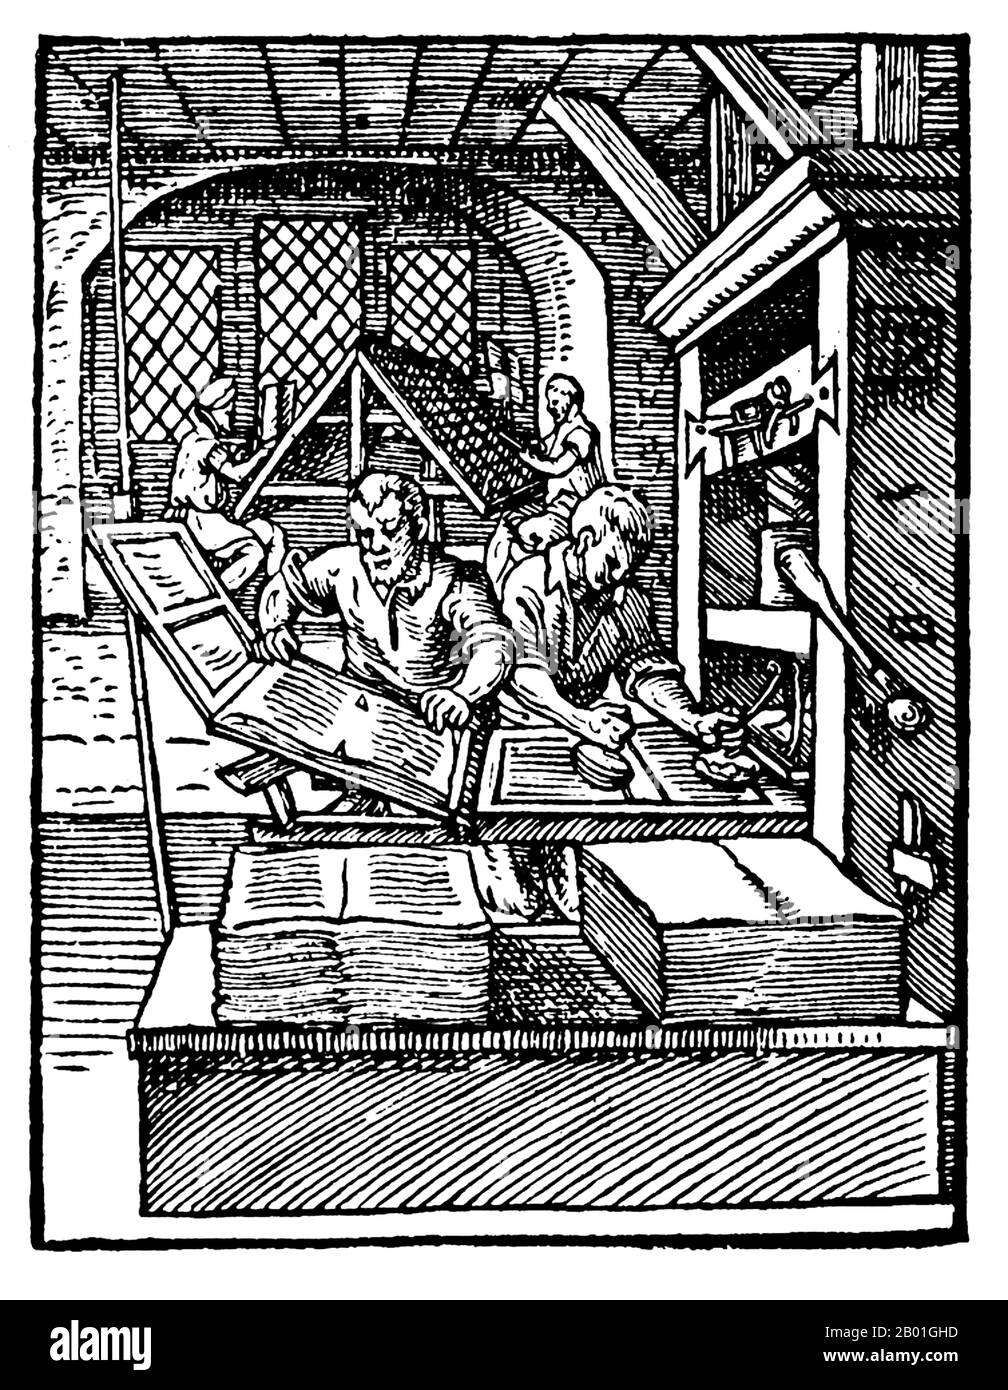 Germania: Una macchina da stampa meccanica del tipo progettato da Johannes Gutenberg. Incisione su legno di Jost Amman (1539 - 17 marzo 1591), c. 1568. A sinistra in primo piano, una stampante rimuove una pagina stampata dalla stampante. La stampante a destra sta inchiostrando la piastra. In background, i compositi utilizzano il tipo cast. Le stampanti di questo tipo possono produrre 240 stampe all'ora. Foto Stock